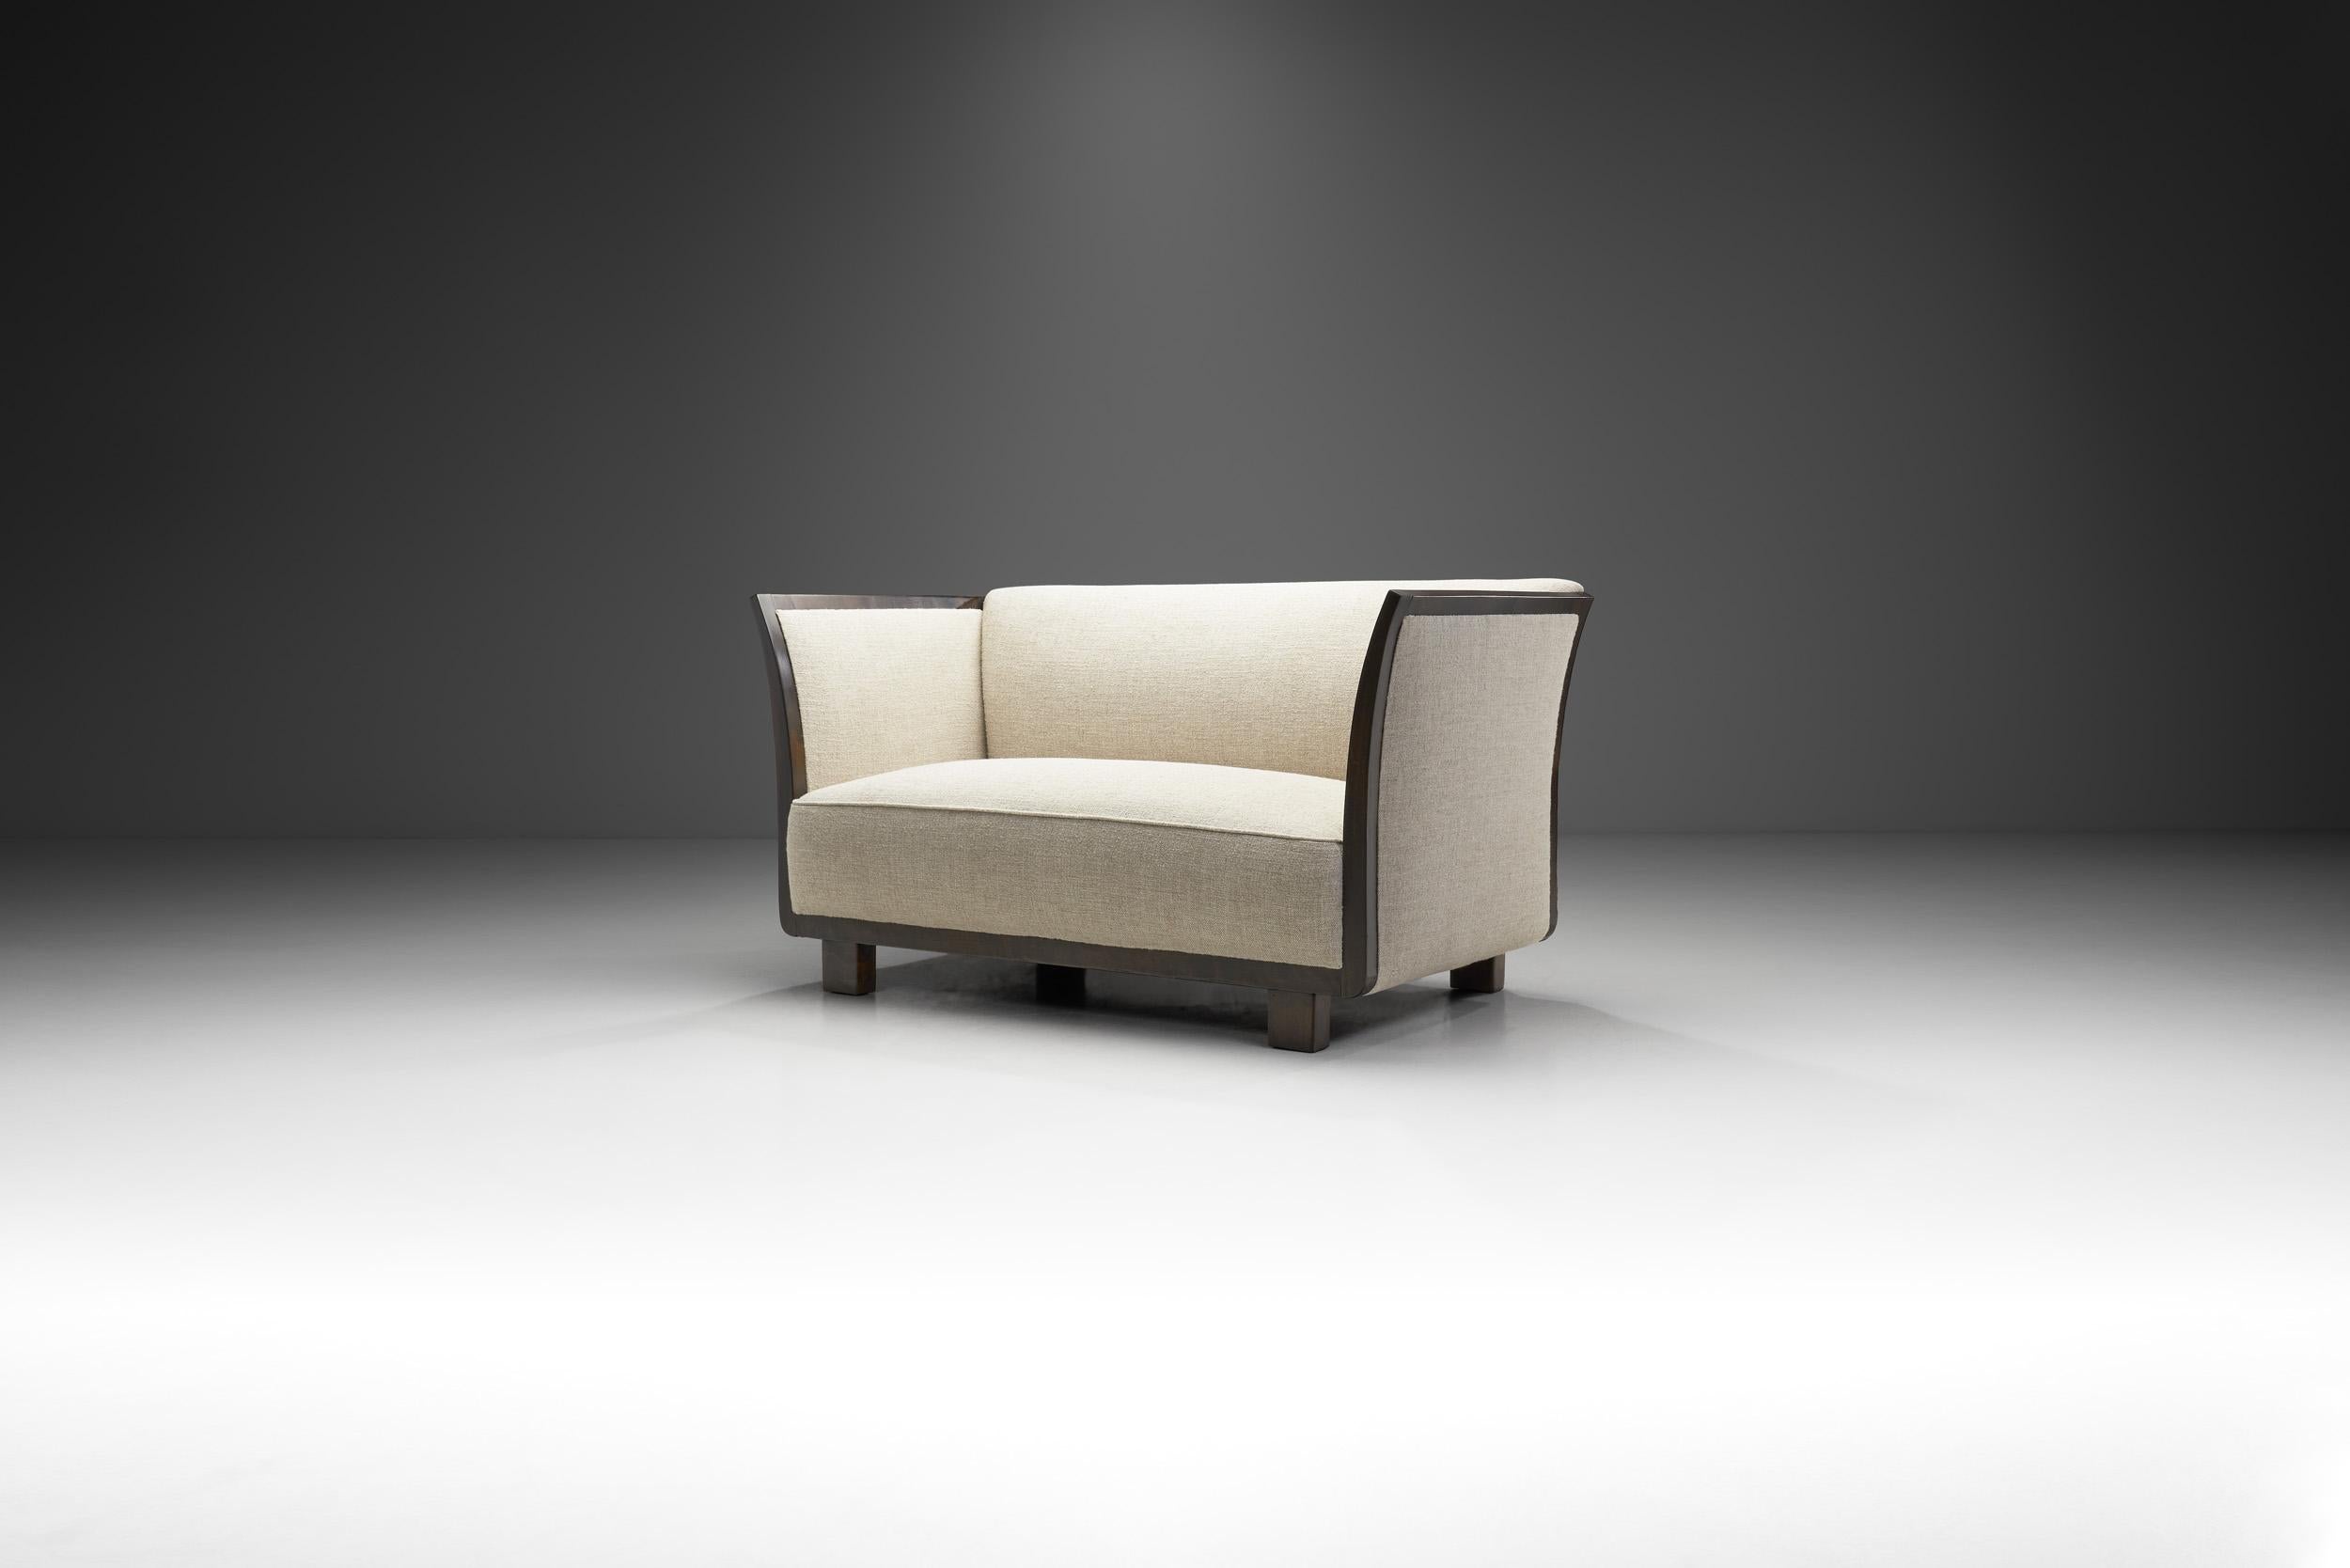 Dieses dänische Zweisitzer-Sofa hat eine elegante, moderne Note, die unverkennbar aus dieser Zeit stammt. Das Design zeichnet sich durch klare, scharfe Winkel und abgerundete Linien aus, die ein perfektes Gleichgewicht schaffen und zeigen, warum die